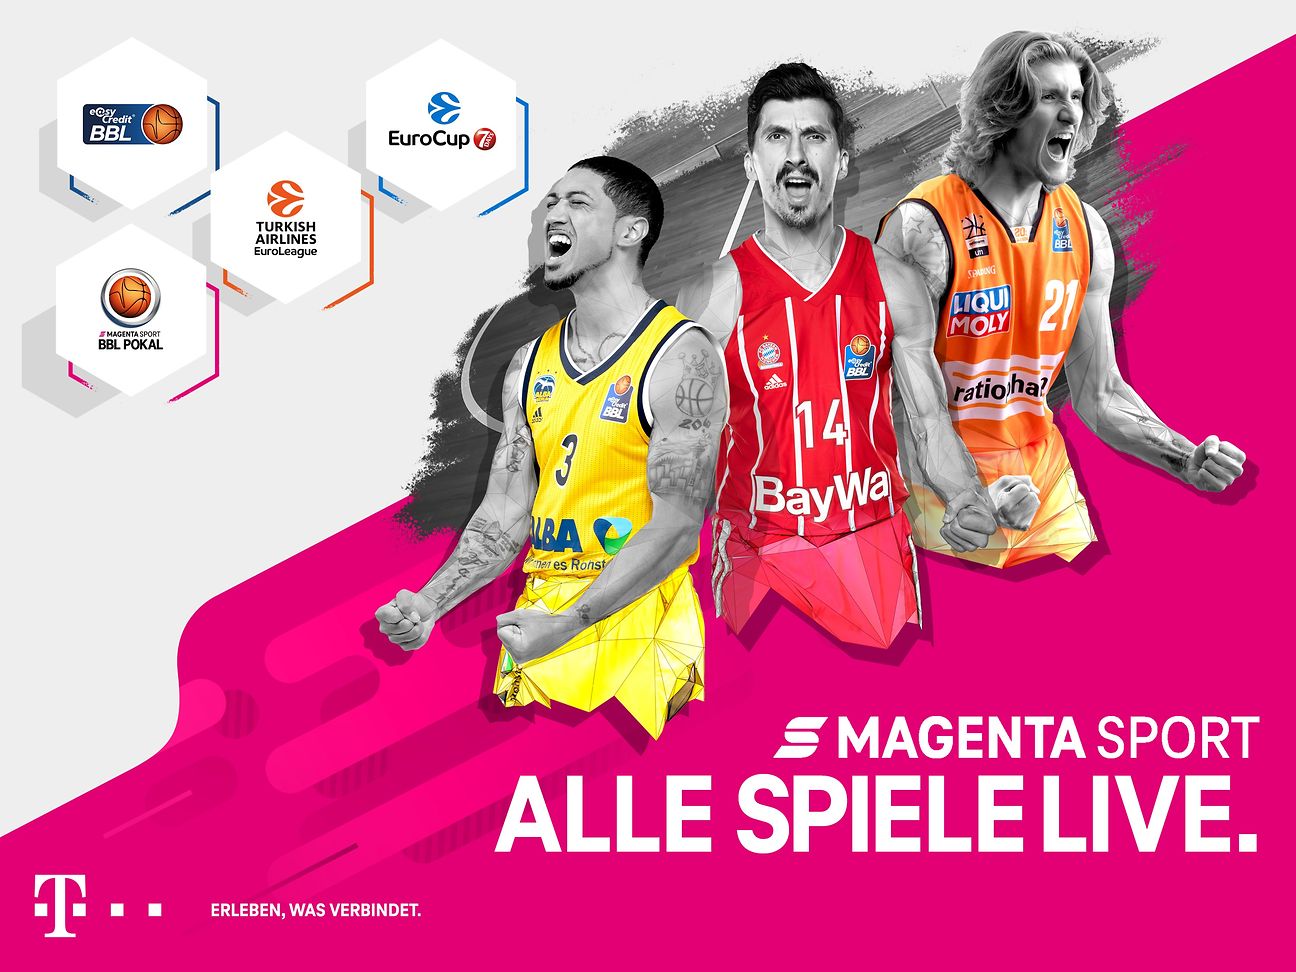 MagentaSport geht mit spannendem Basketball-Angebot in die neue Saison Deutsche Telekom